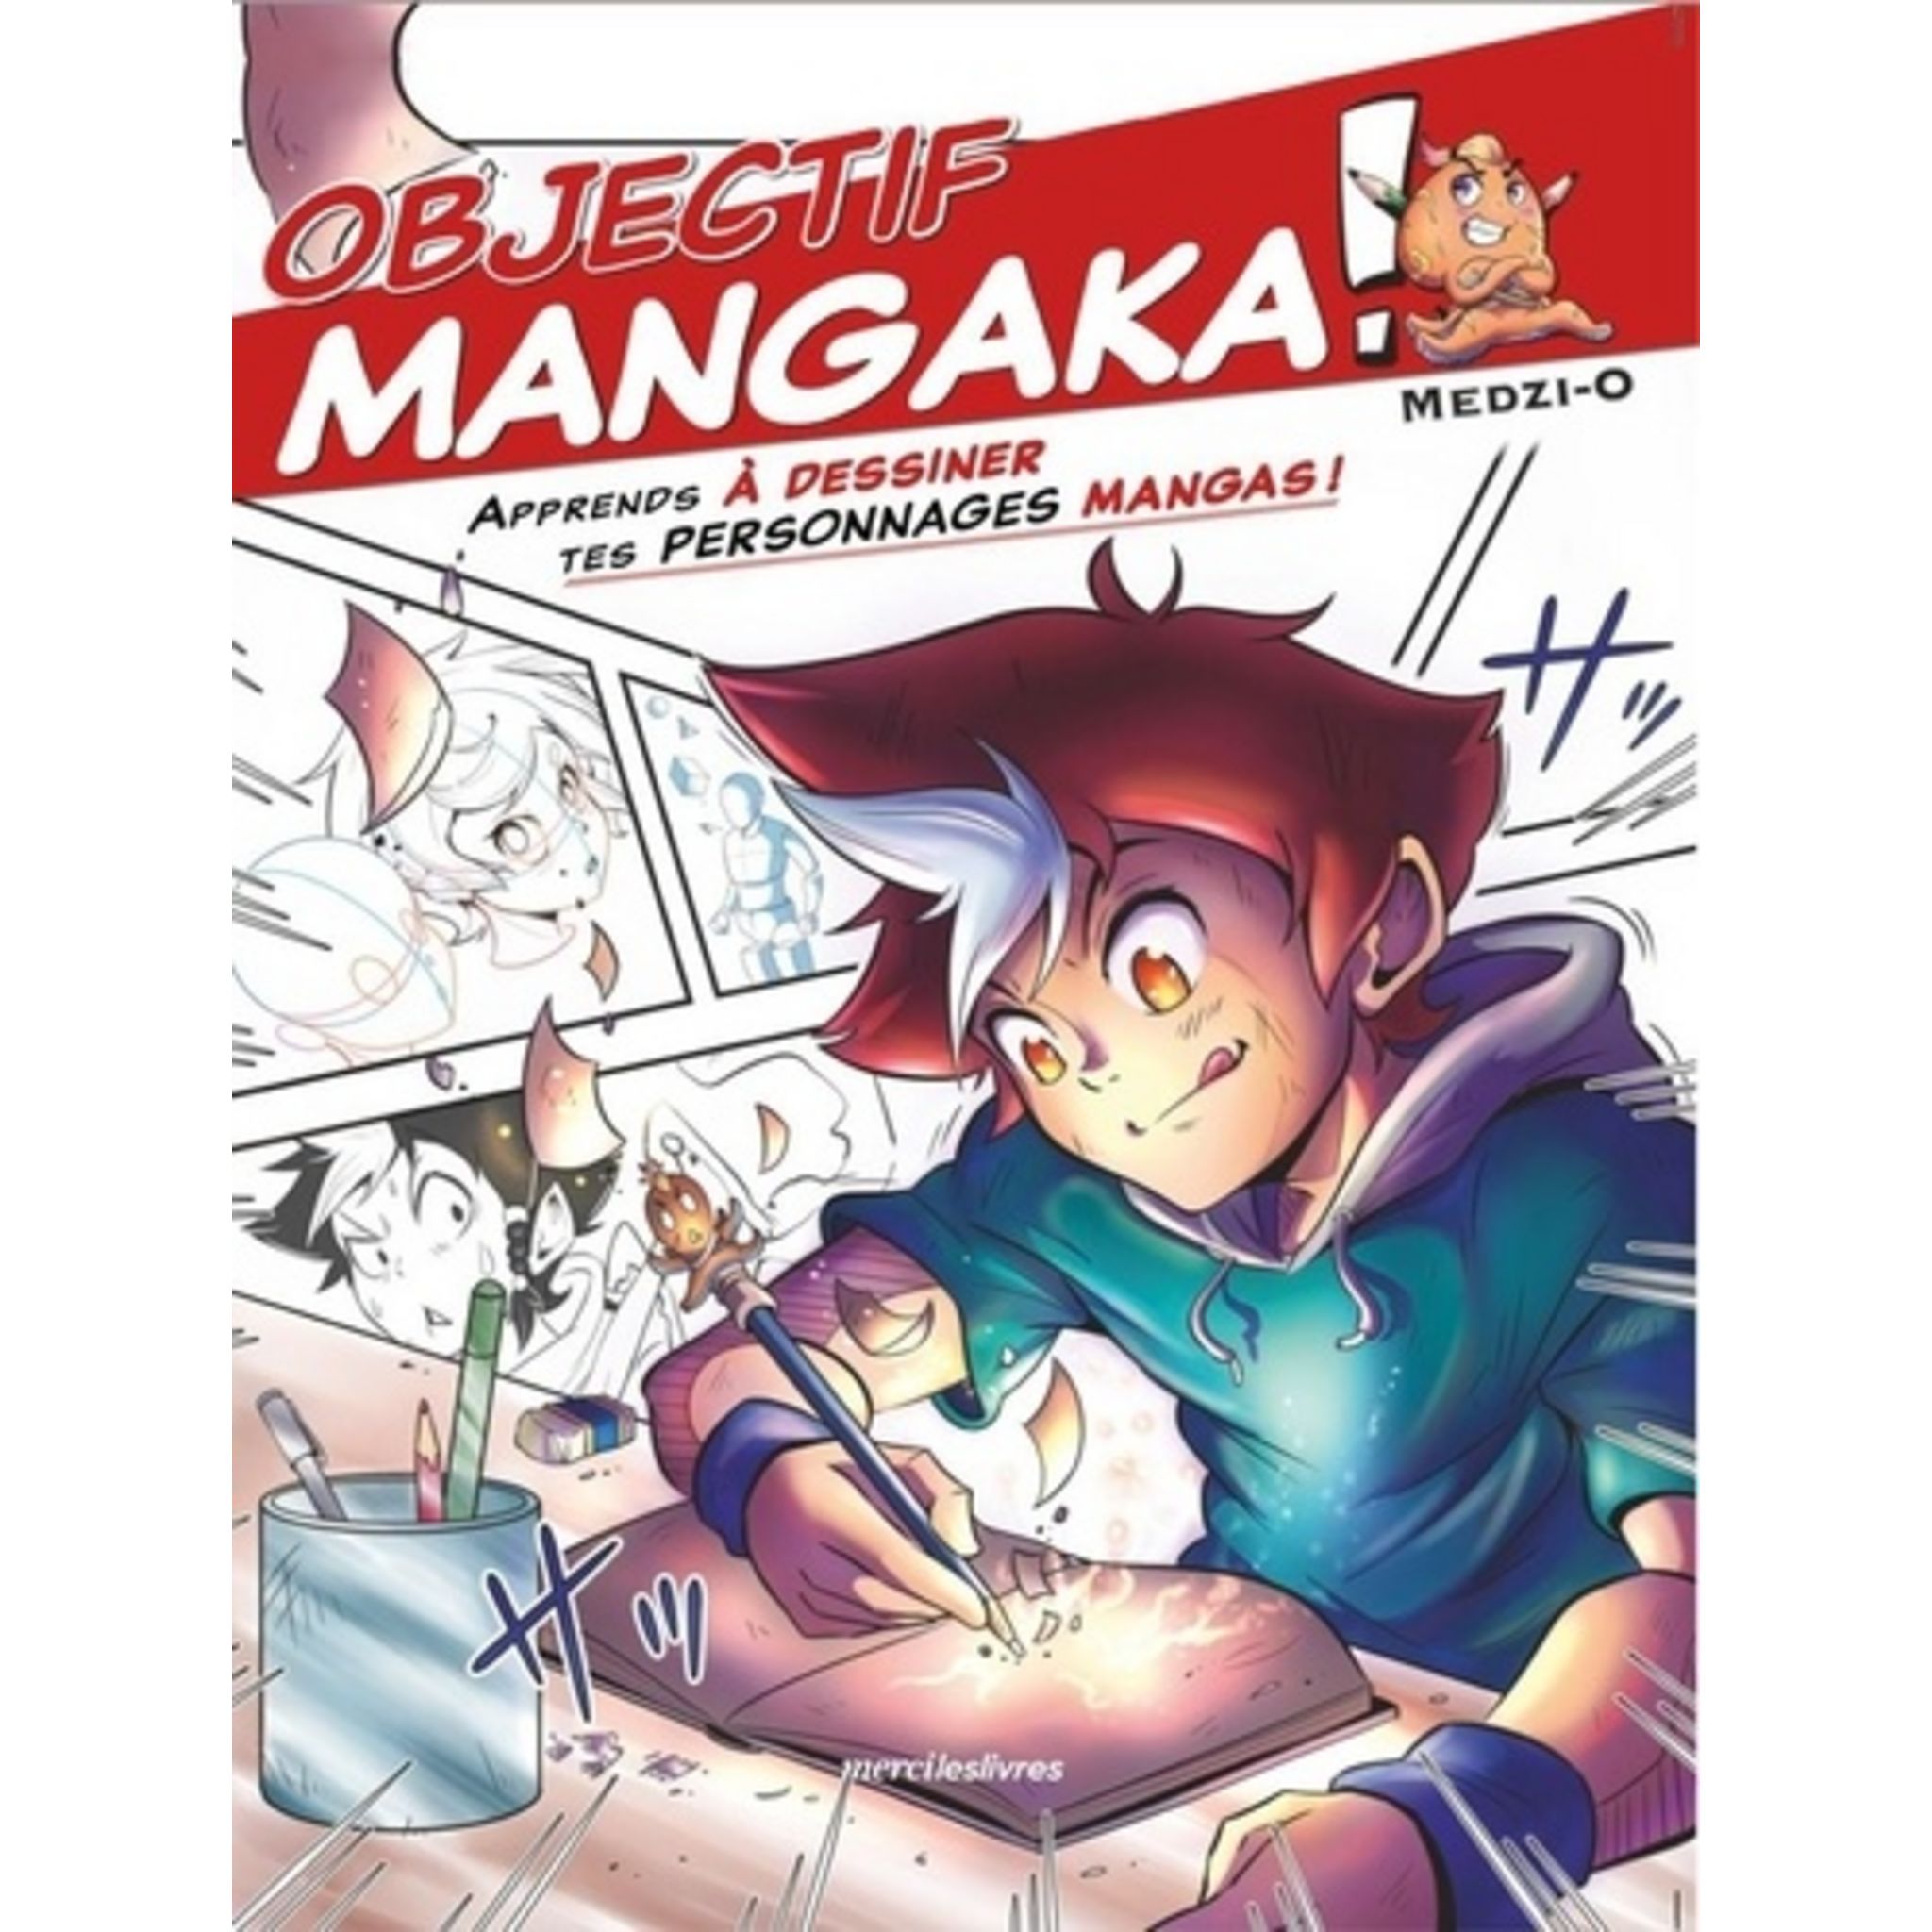 Apprendre à dessiner des mangas: Livre de dessin manga étape par